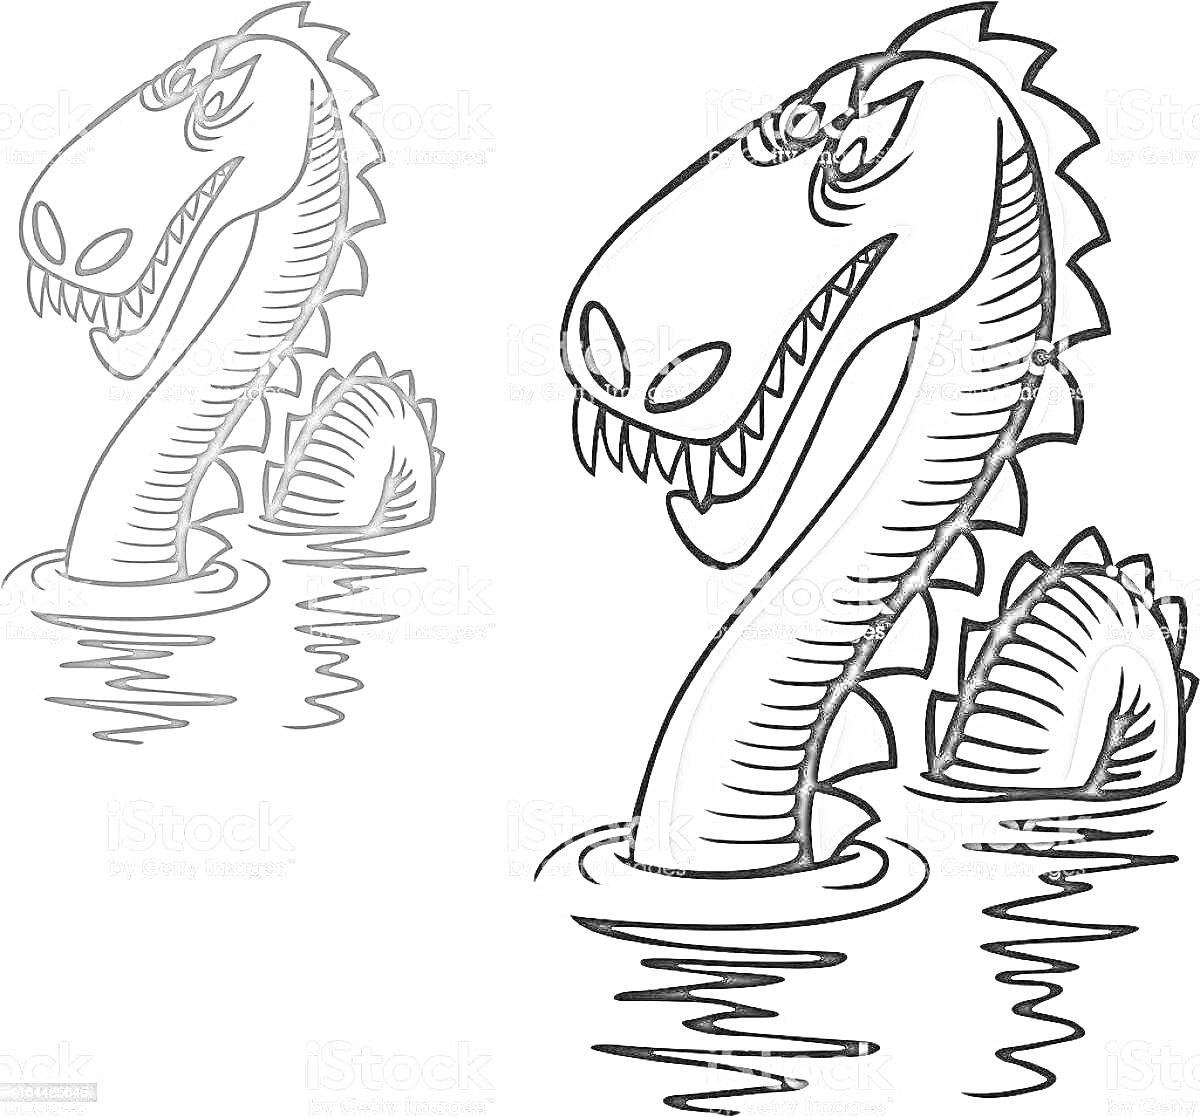 Раскраска Лохнесское чудовище с двумя головами, глазами, зубами и спиной, выглядывающими из воды